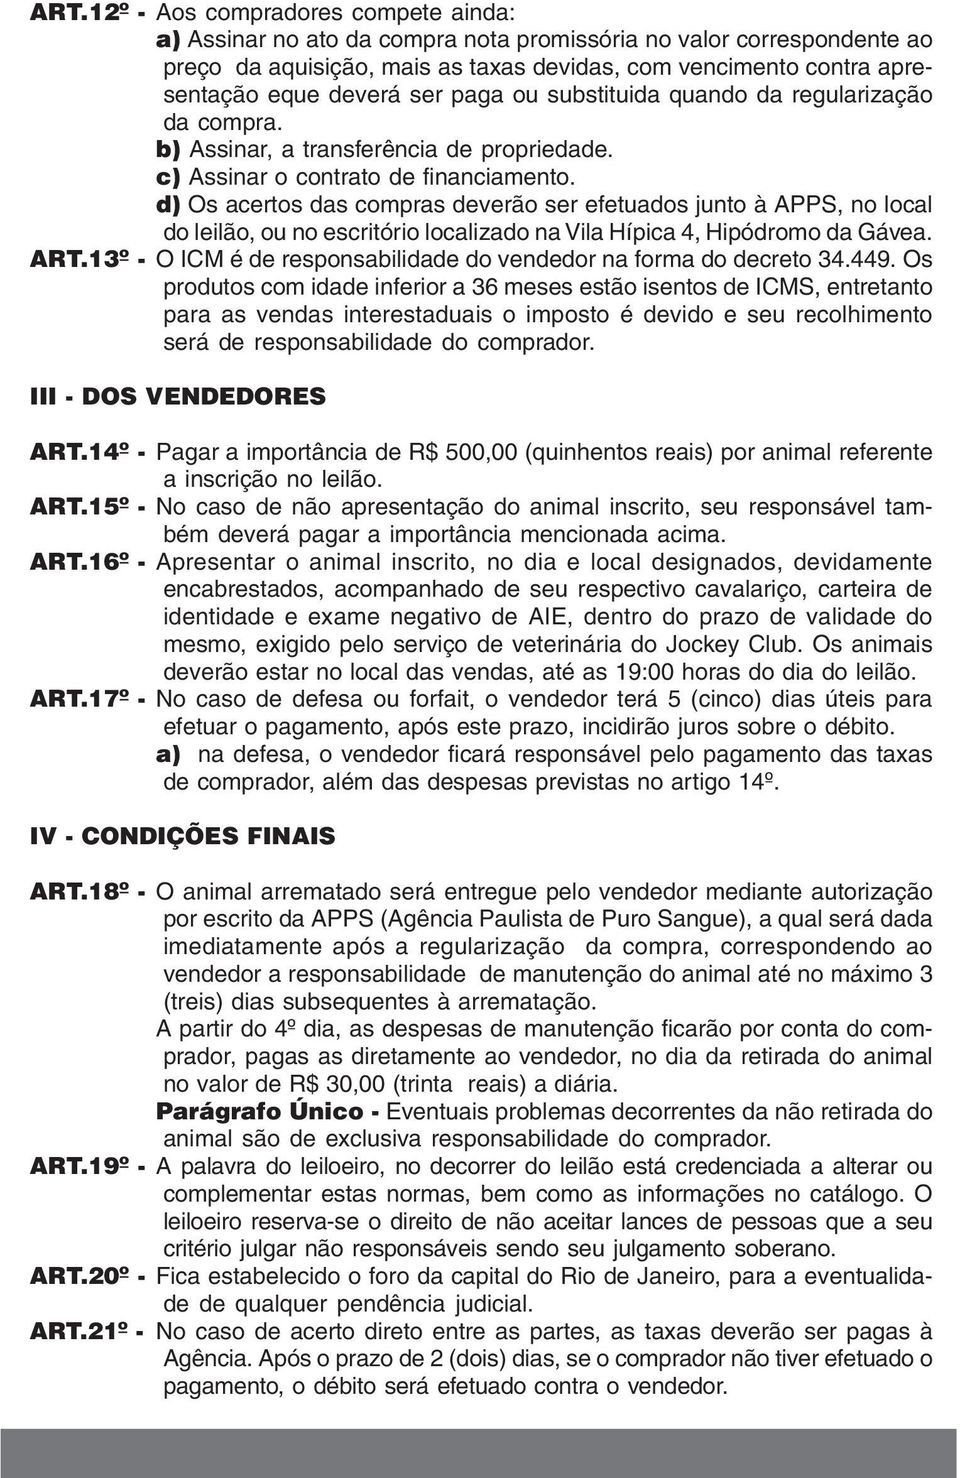 d) Os acertos das compras deverão ser efetuados junto à APPS, no local do leilão, ou no escritório localizado na Vila Hípica 4, Hipódromo da Gávea. ART.